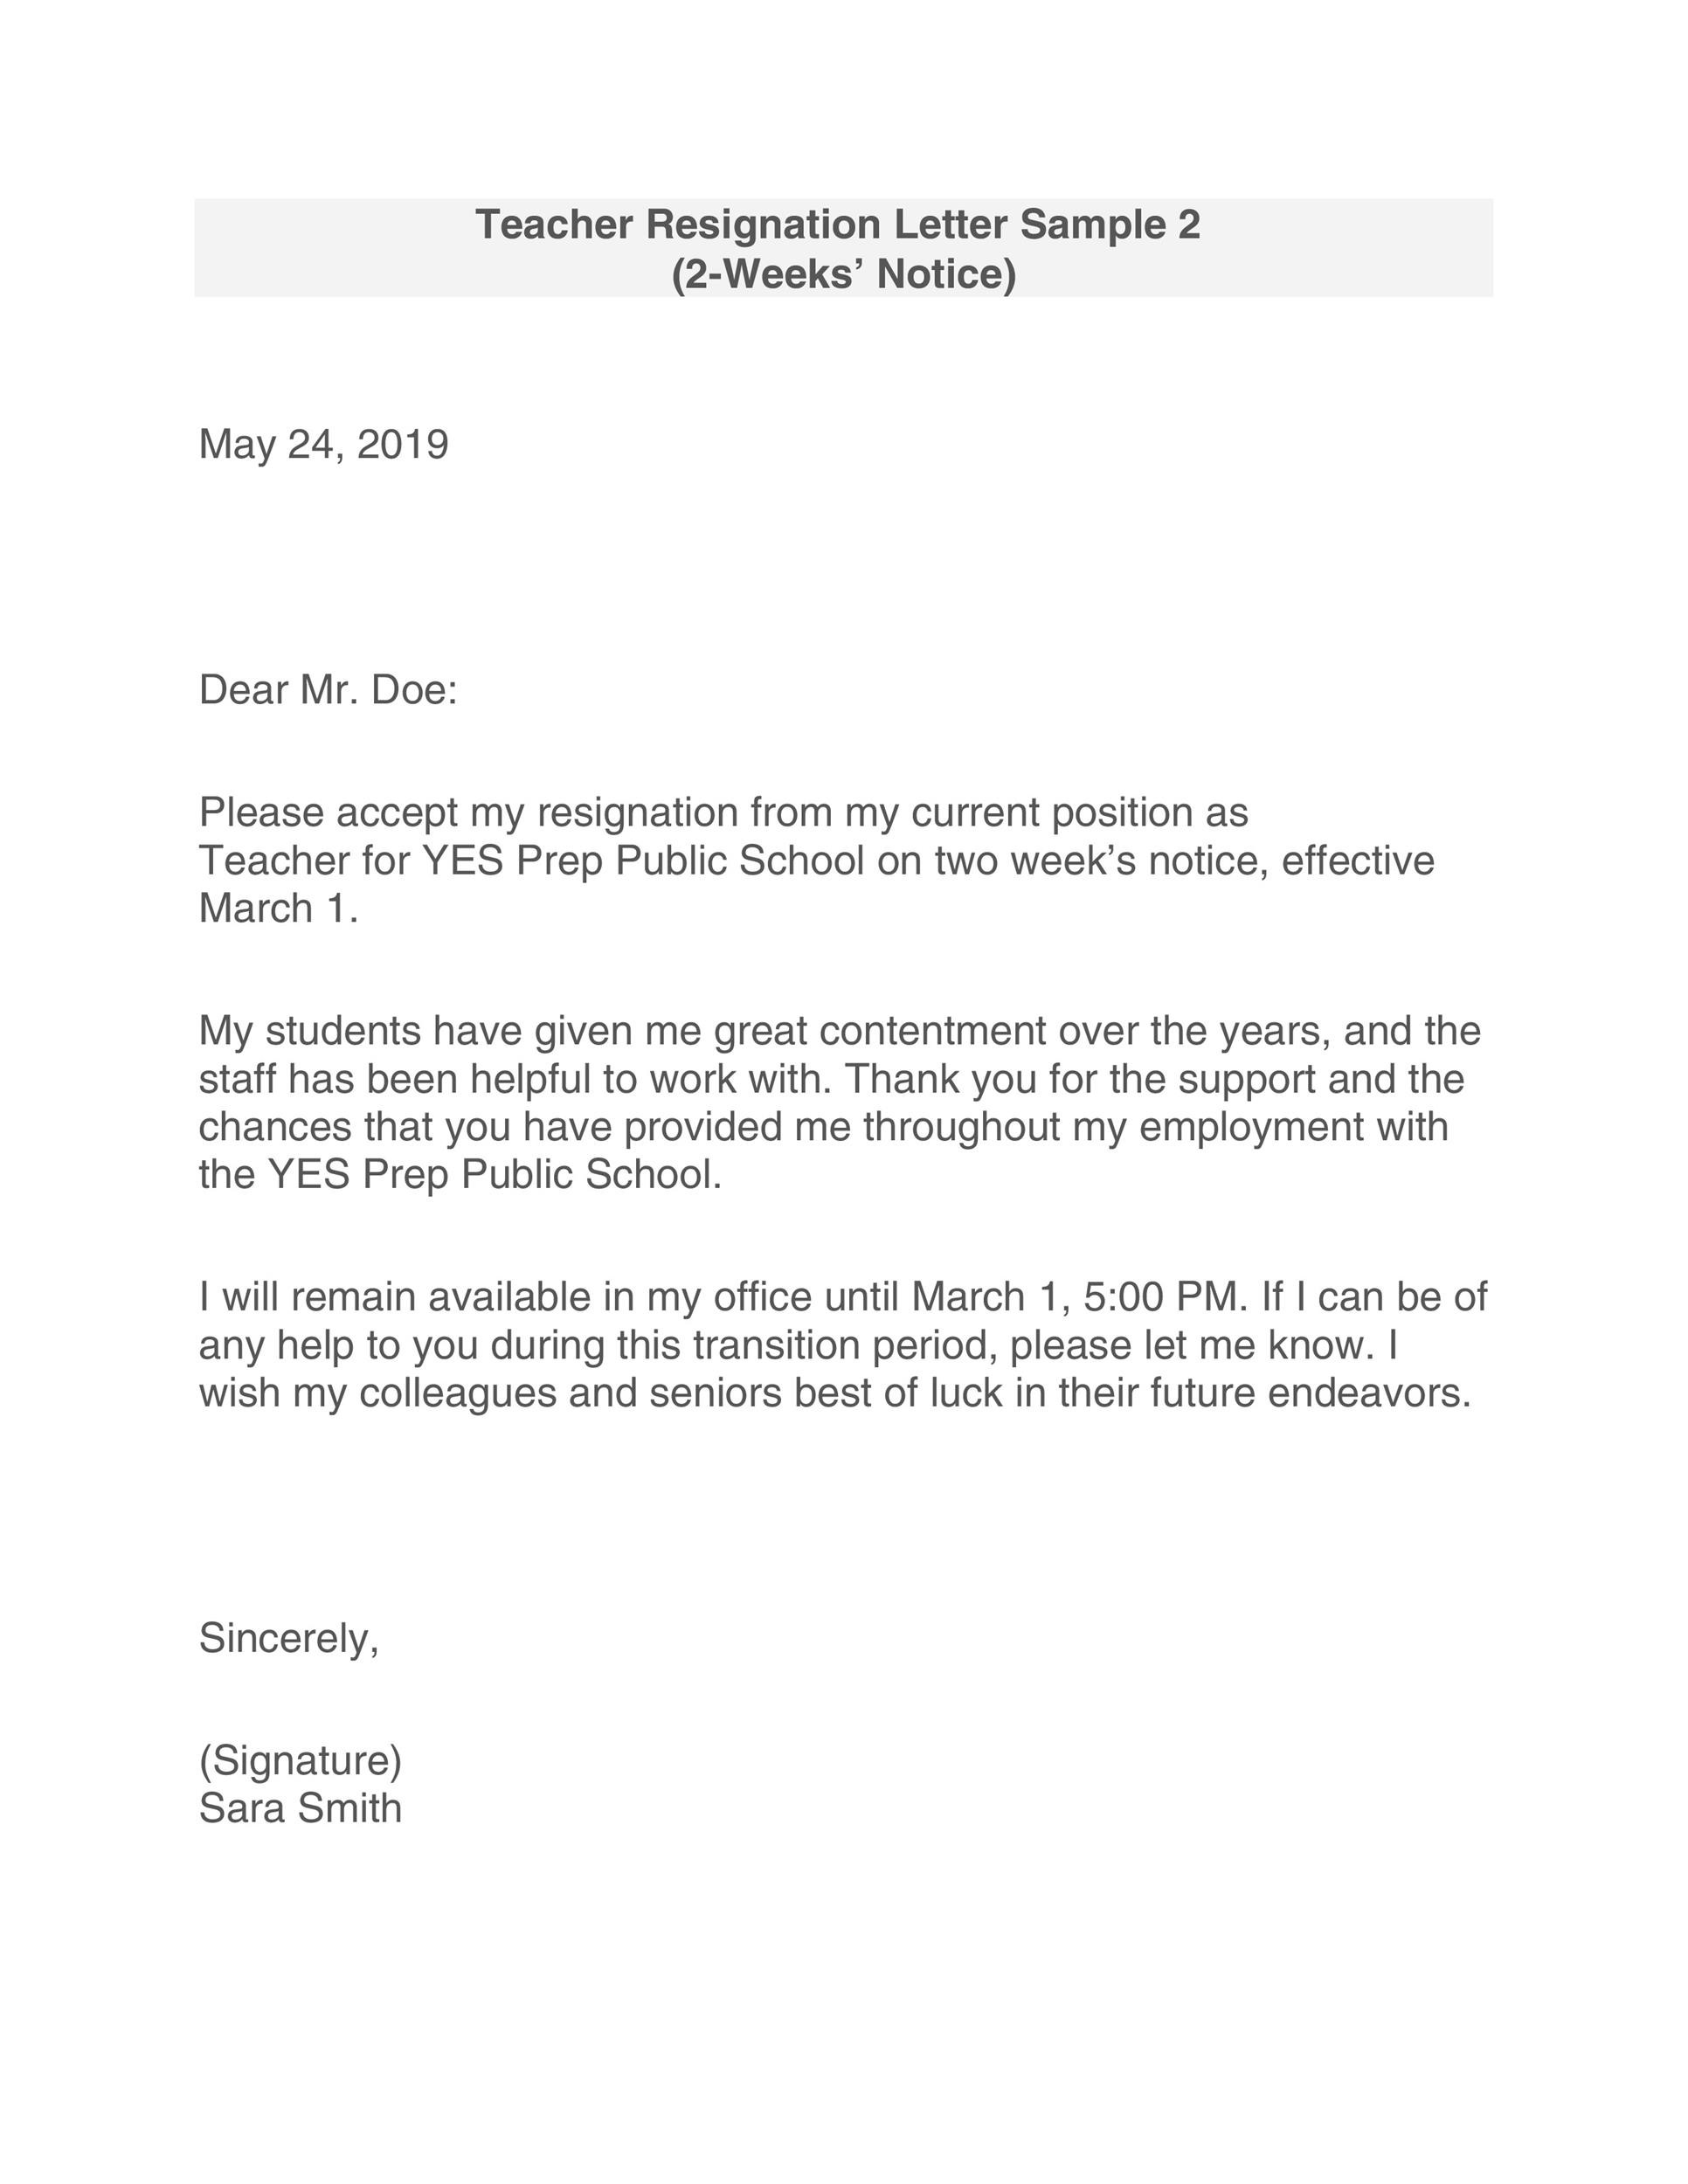 Teacher Letter Of Resignation Samples from templatelab.com